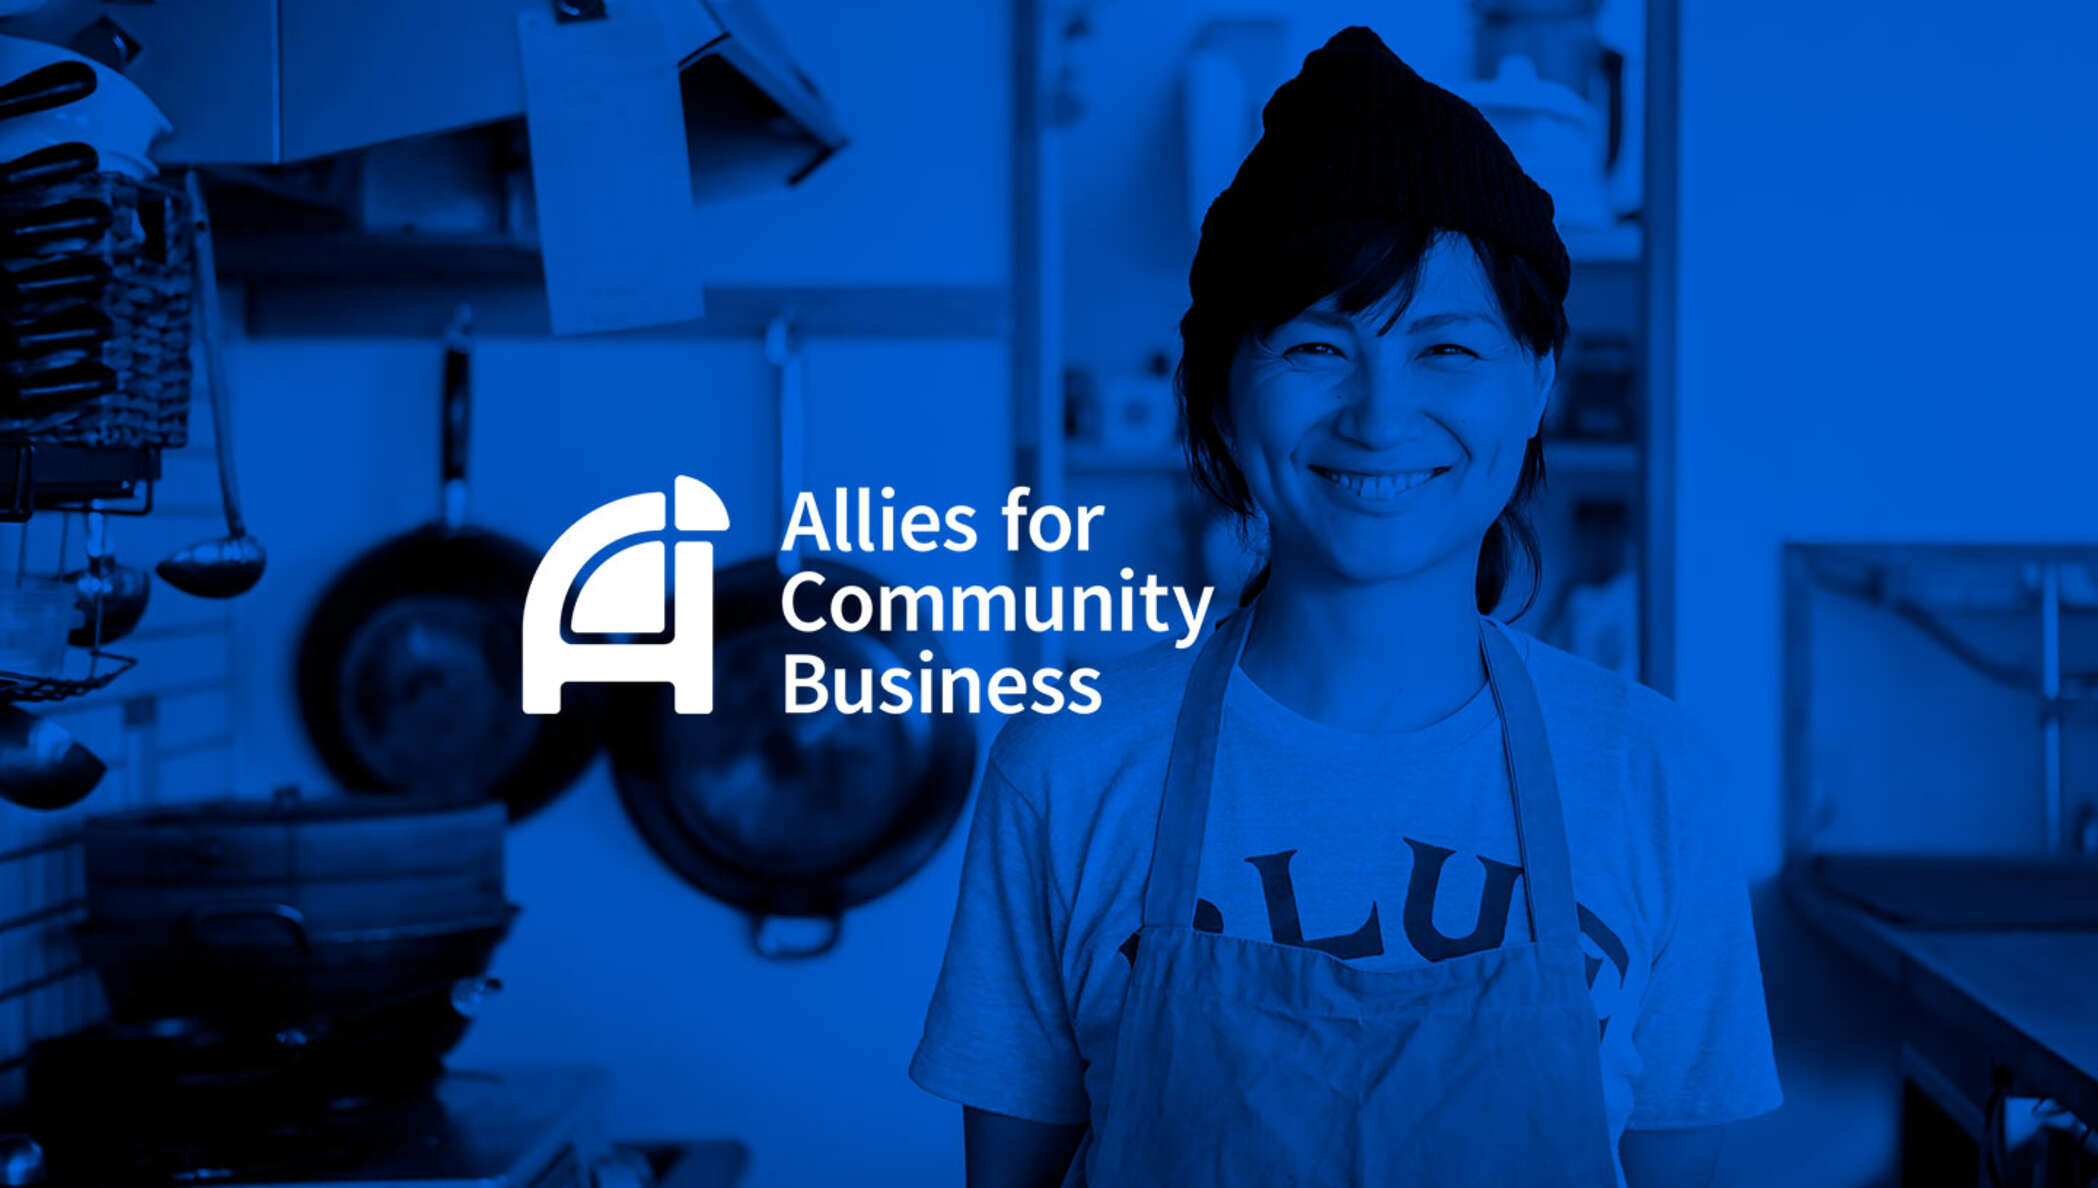 ドキュサインのお客様である Allies for Community Business は、オンライン本人確認を利用して、より安全な融資活動を行っています。